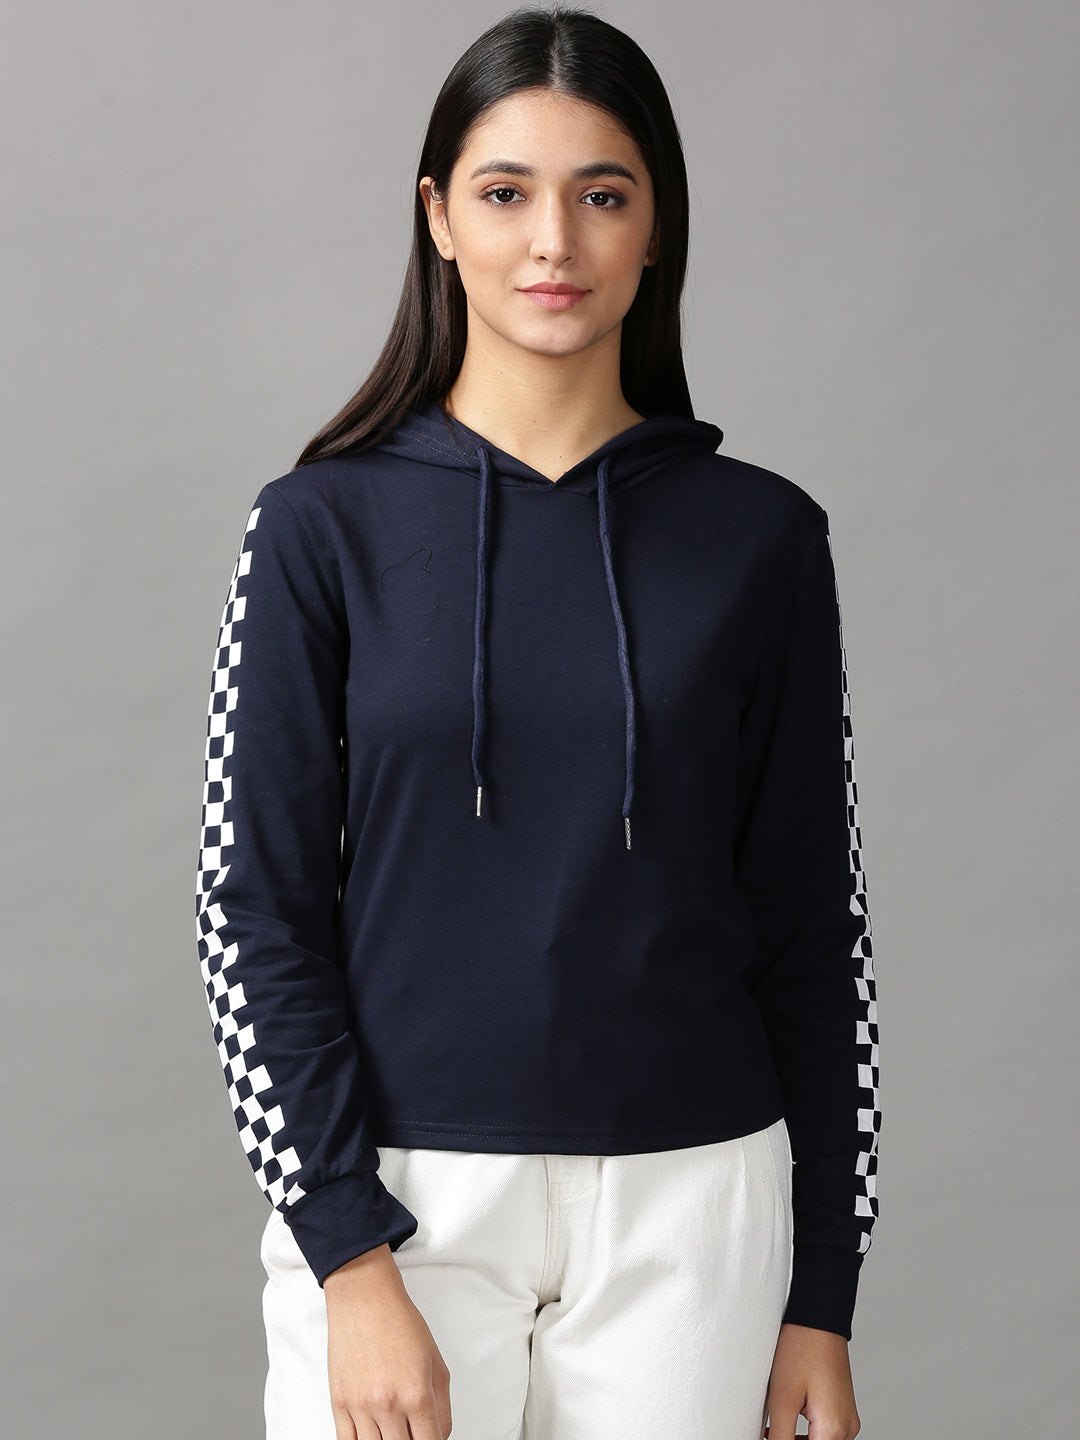 Women's Navy Blue Solid Sweatshirt